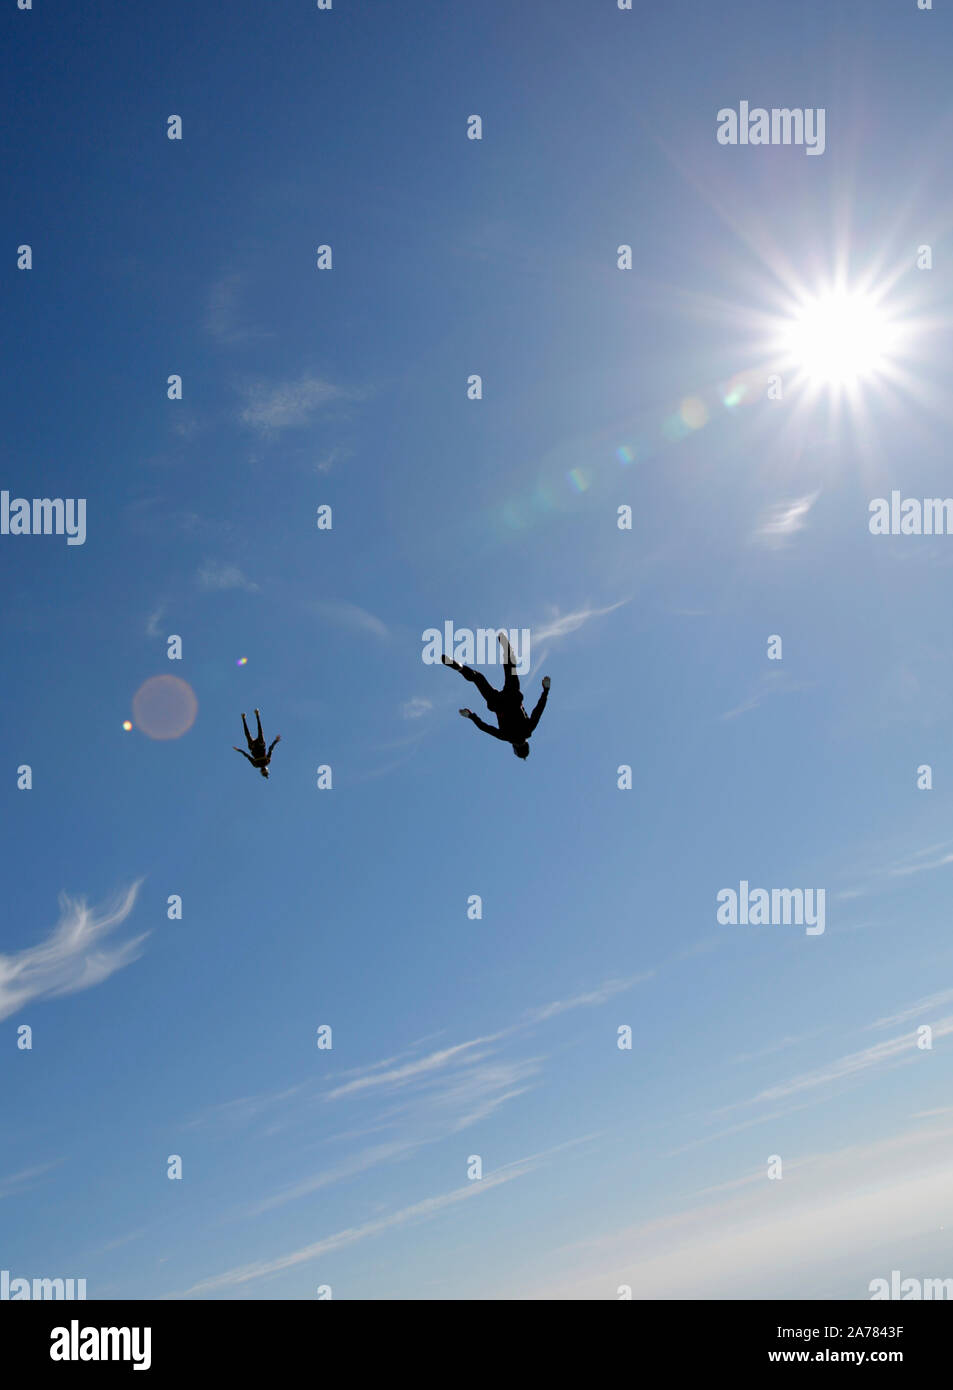 Fallschirmspringen ist ein Spaß für alle! Diese beiden Jumper sind Traning den Kopf nach unten positionieren und fliegen hoch in den blauen Himmel zusammen. Stockfoto